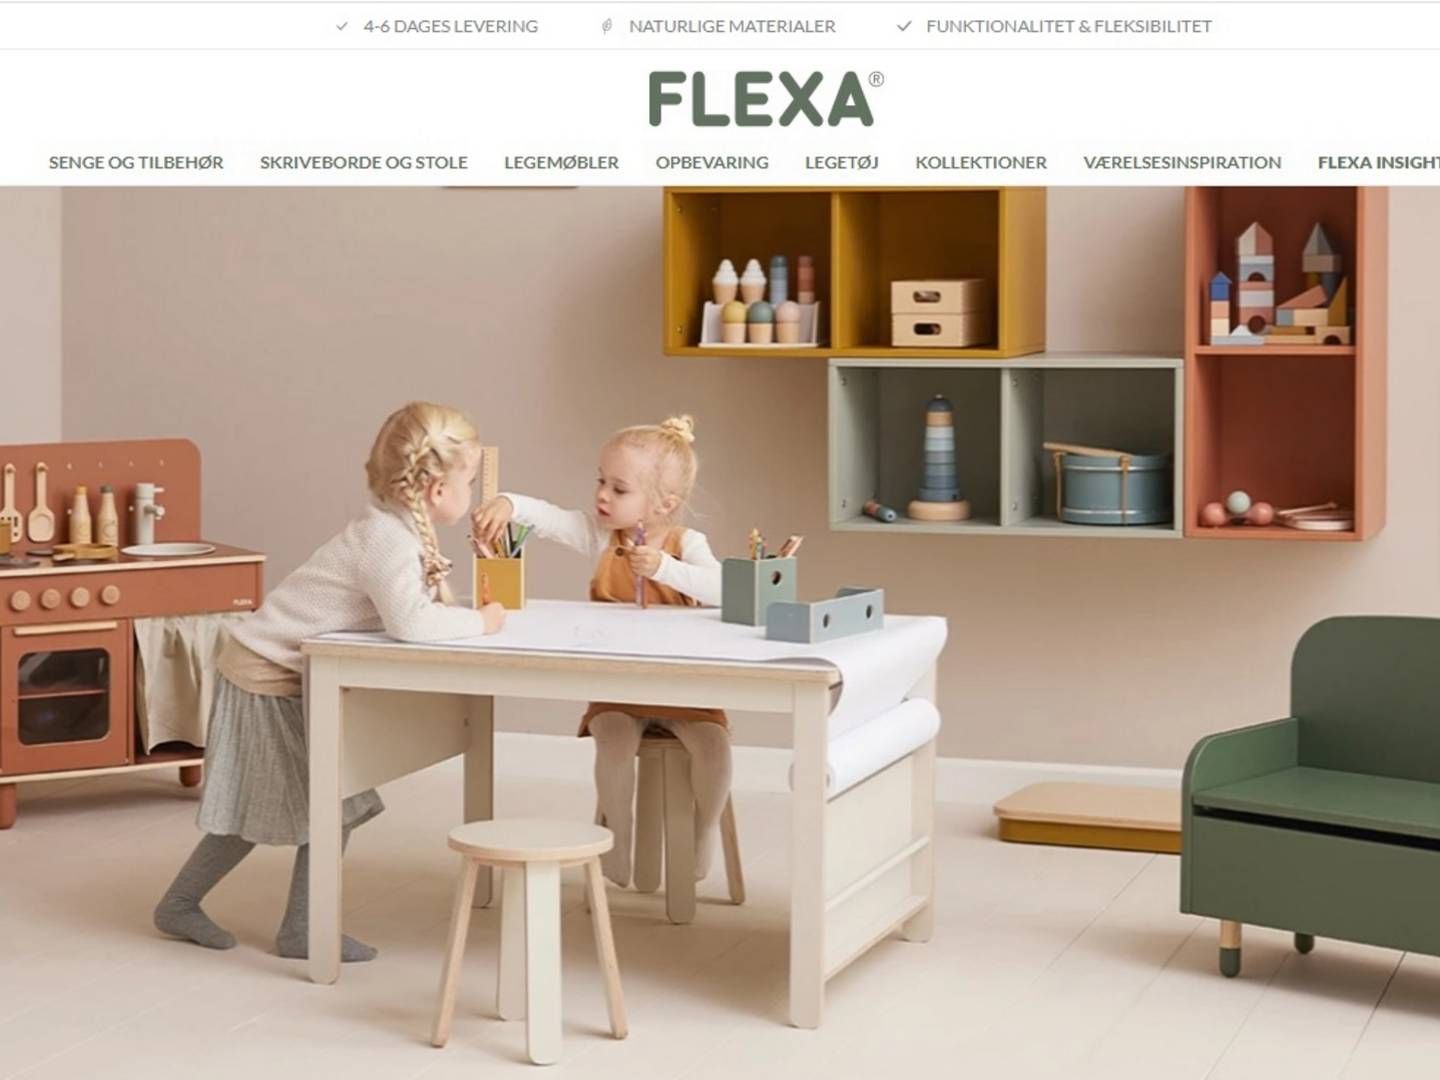 Flexa producerer og sælger børnemøbler og legetøj | Foto: Screenshot/Flexa